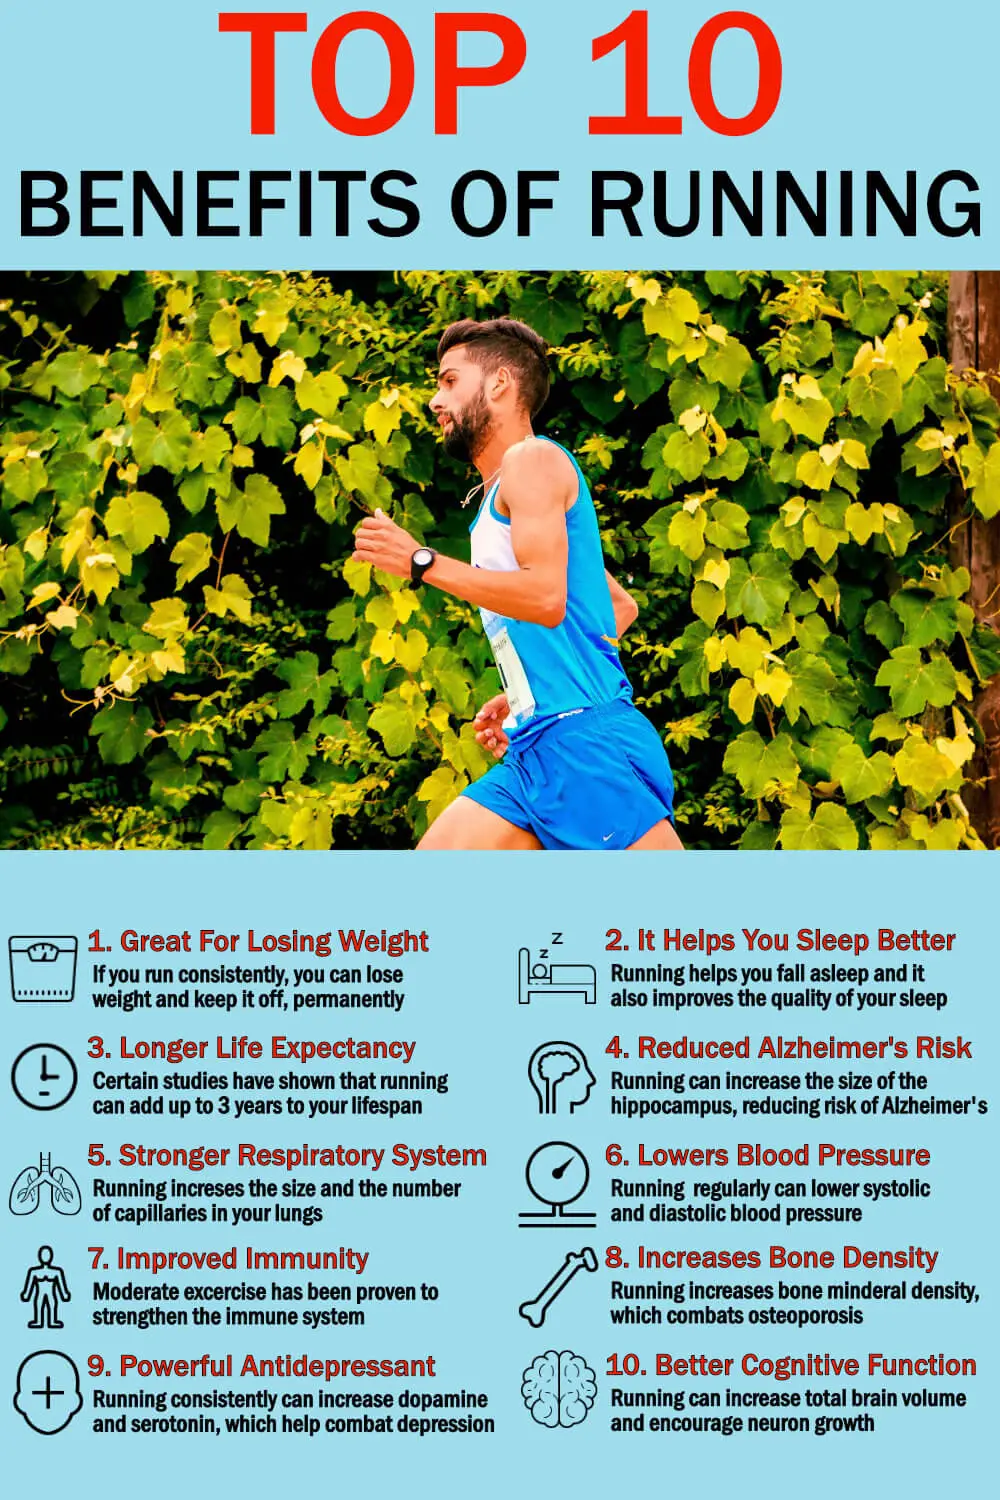 Top 10 Benefits of Running